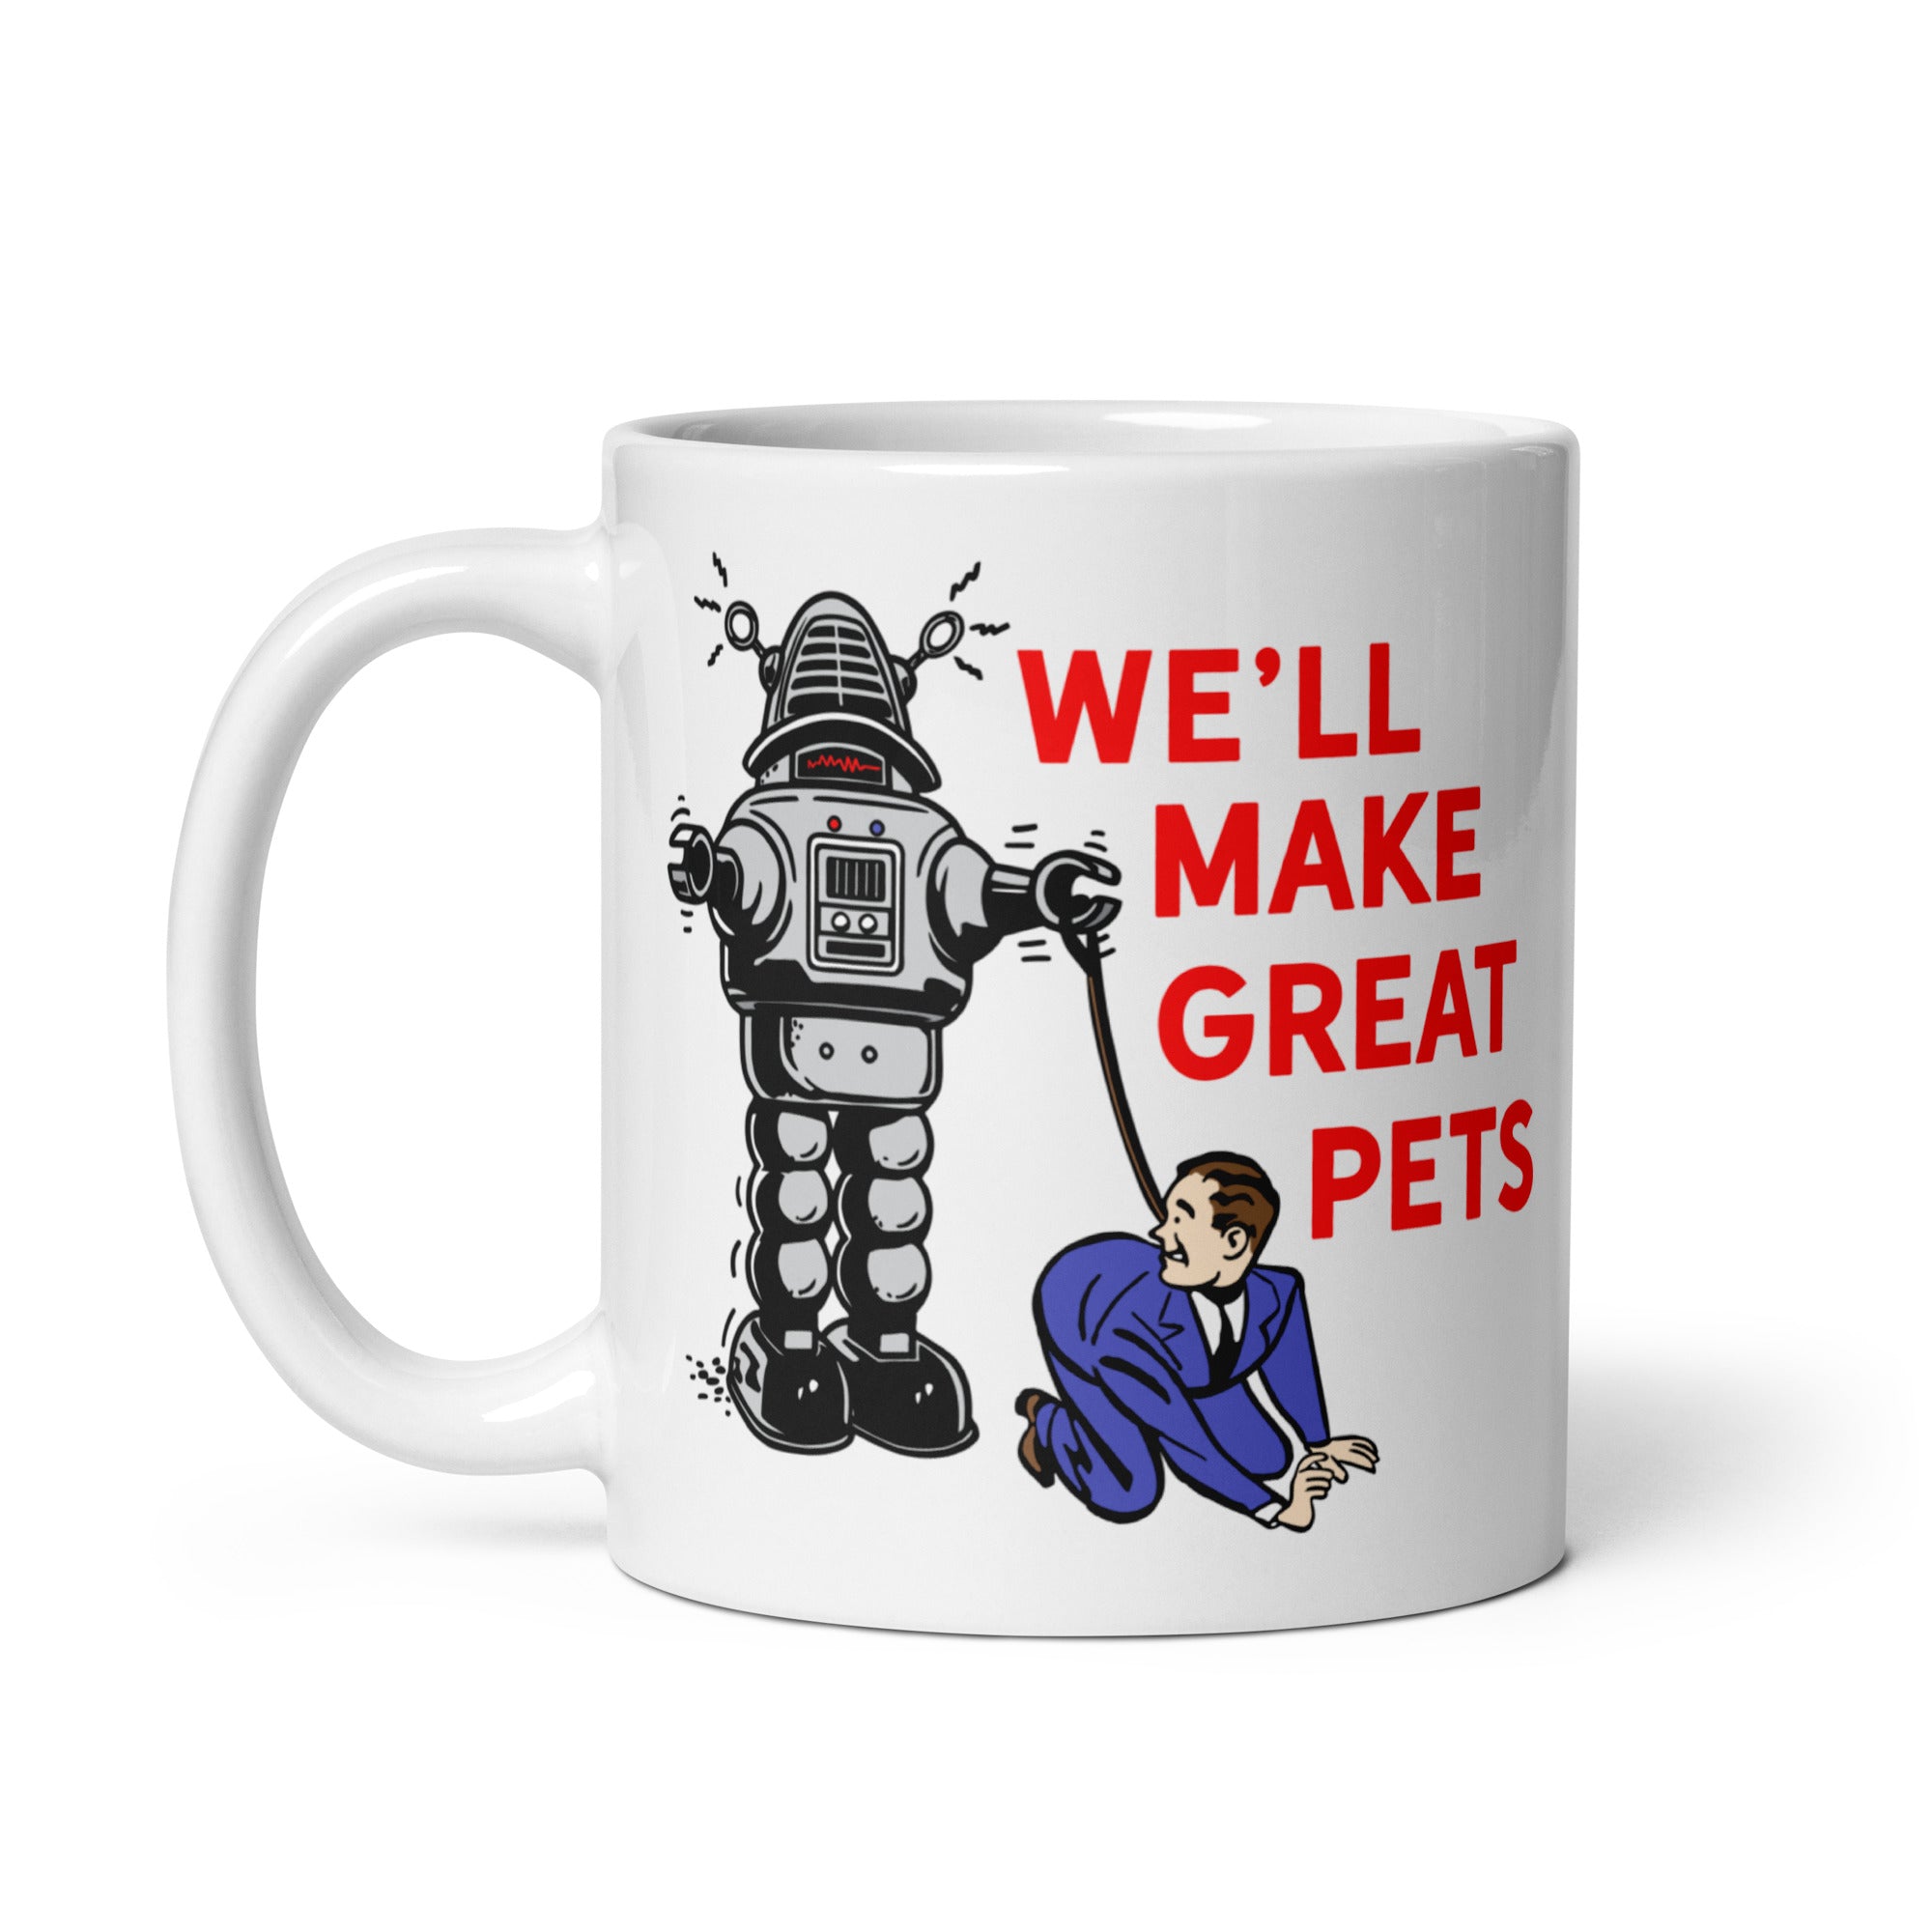 We'll Make Great Pets Mug